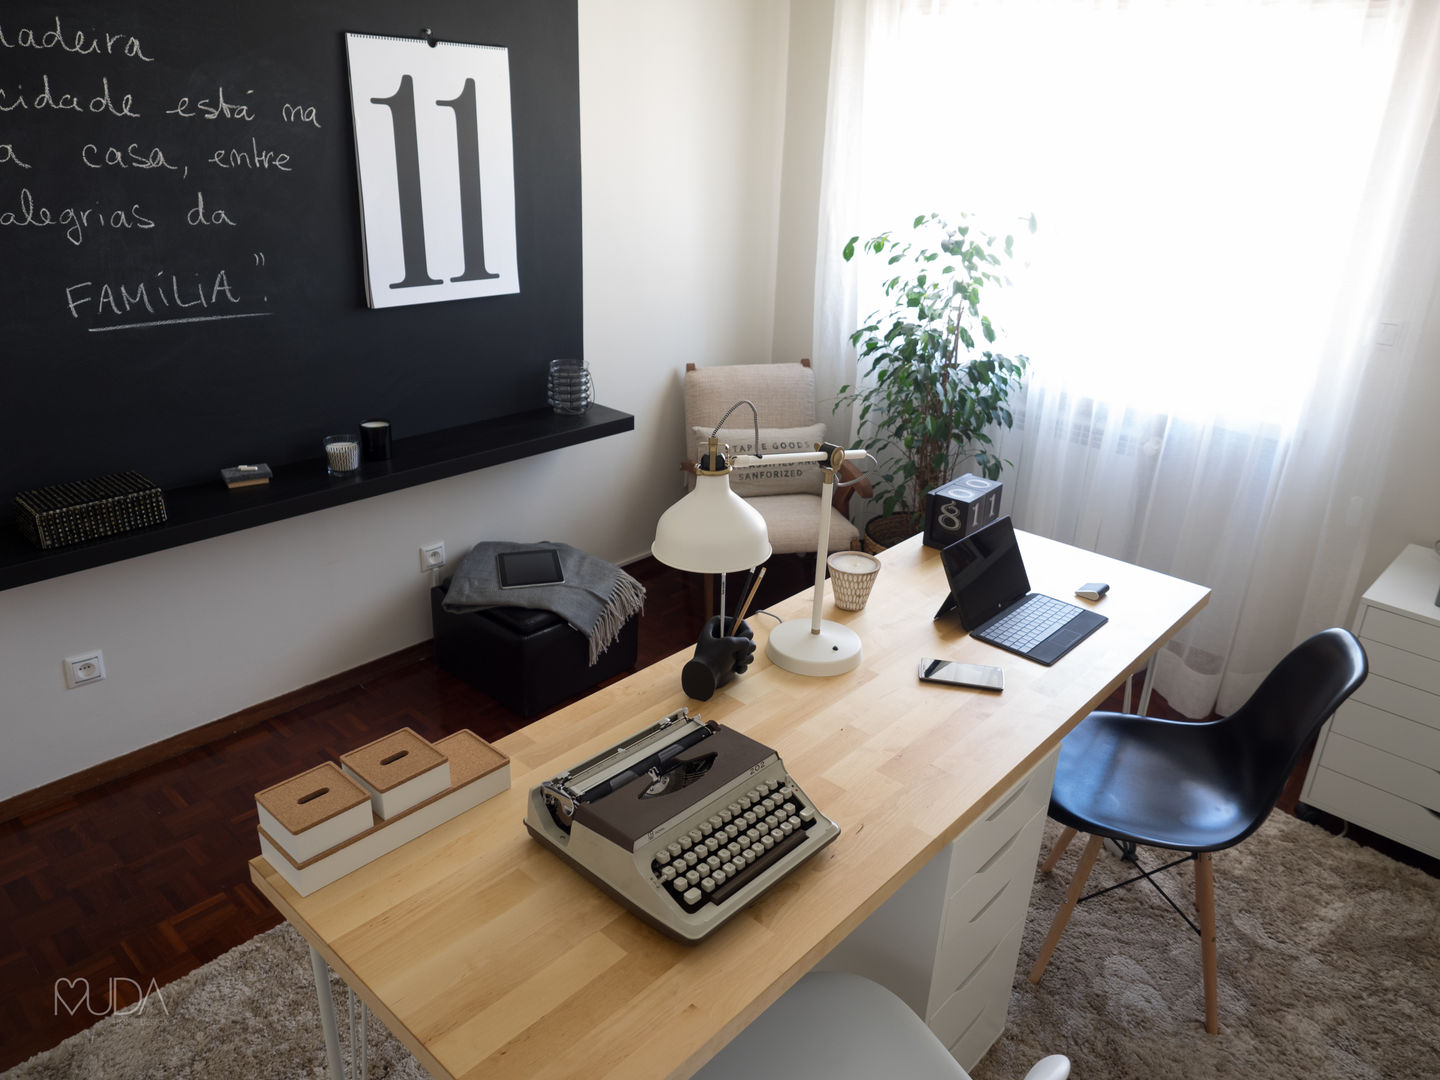 Escritório Preto no Branco - Depois MUDA Home Design Escritórios escandinavos